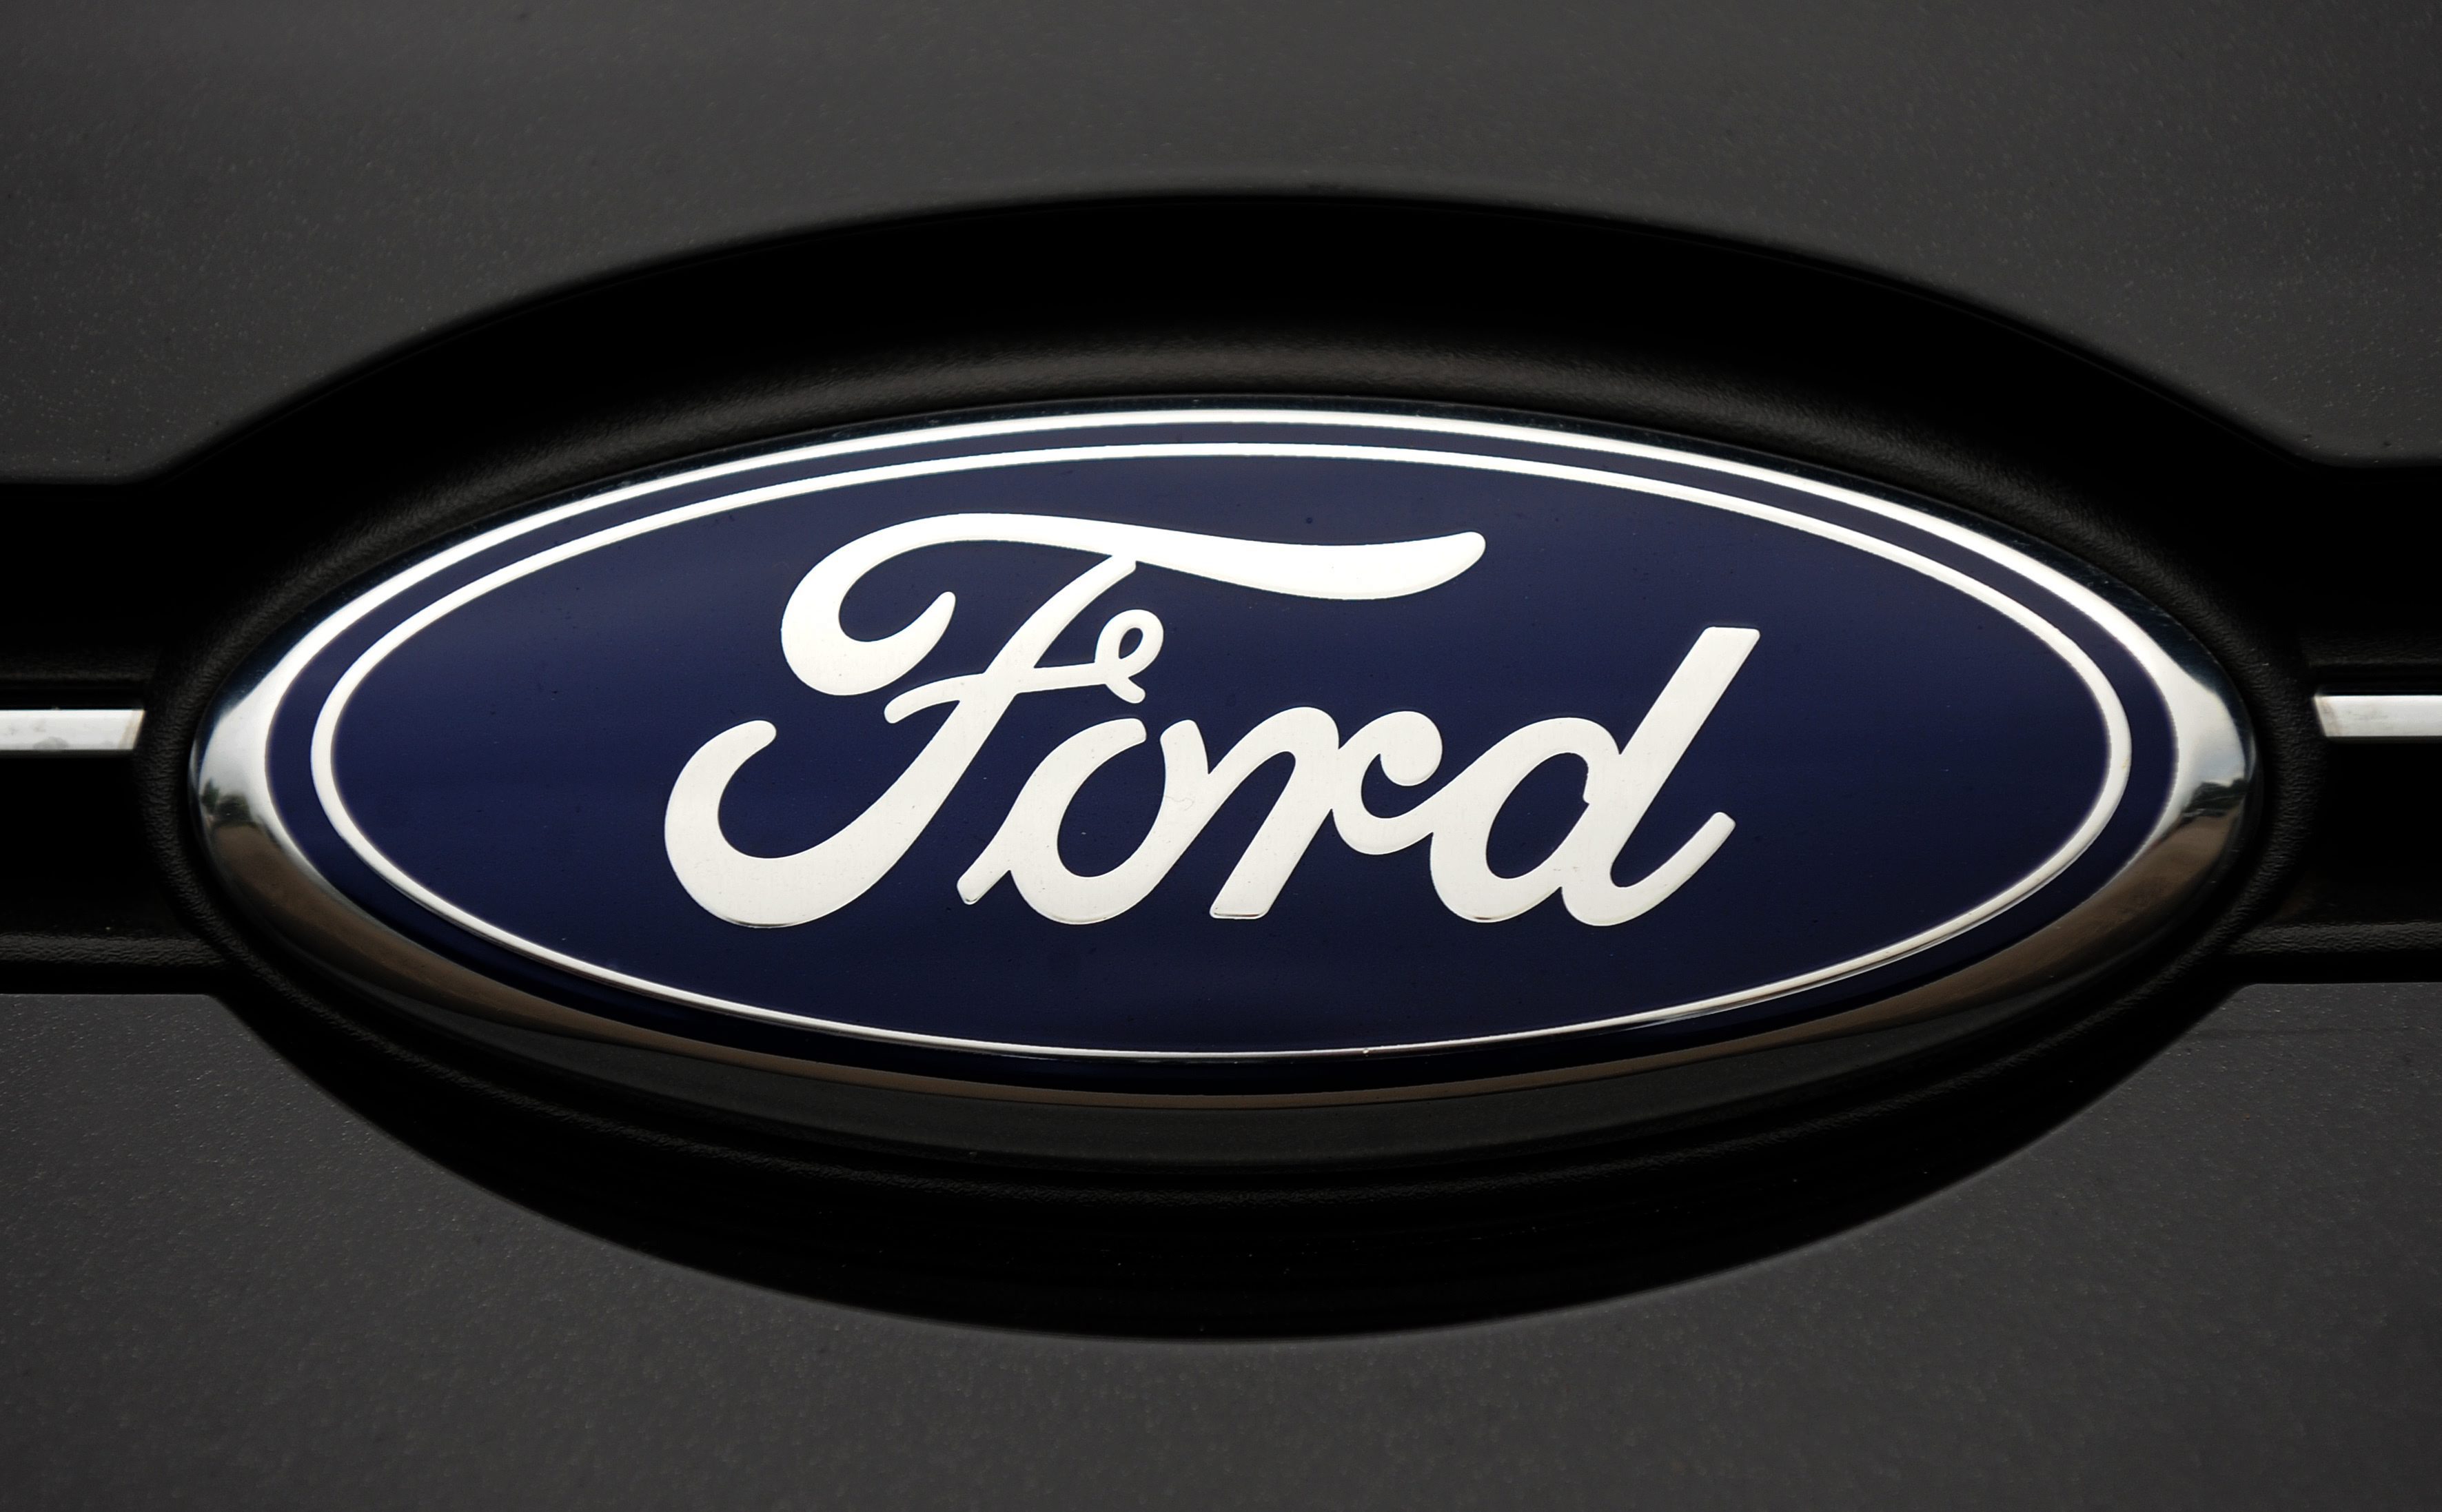 Ford чака загуби за $1,5 млрд. на европейския пазар